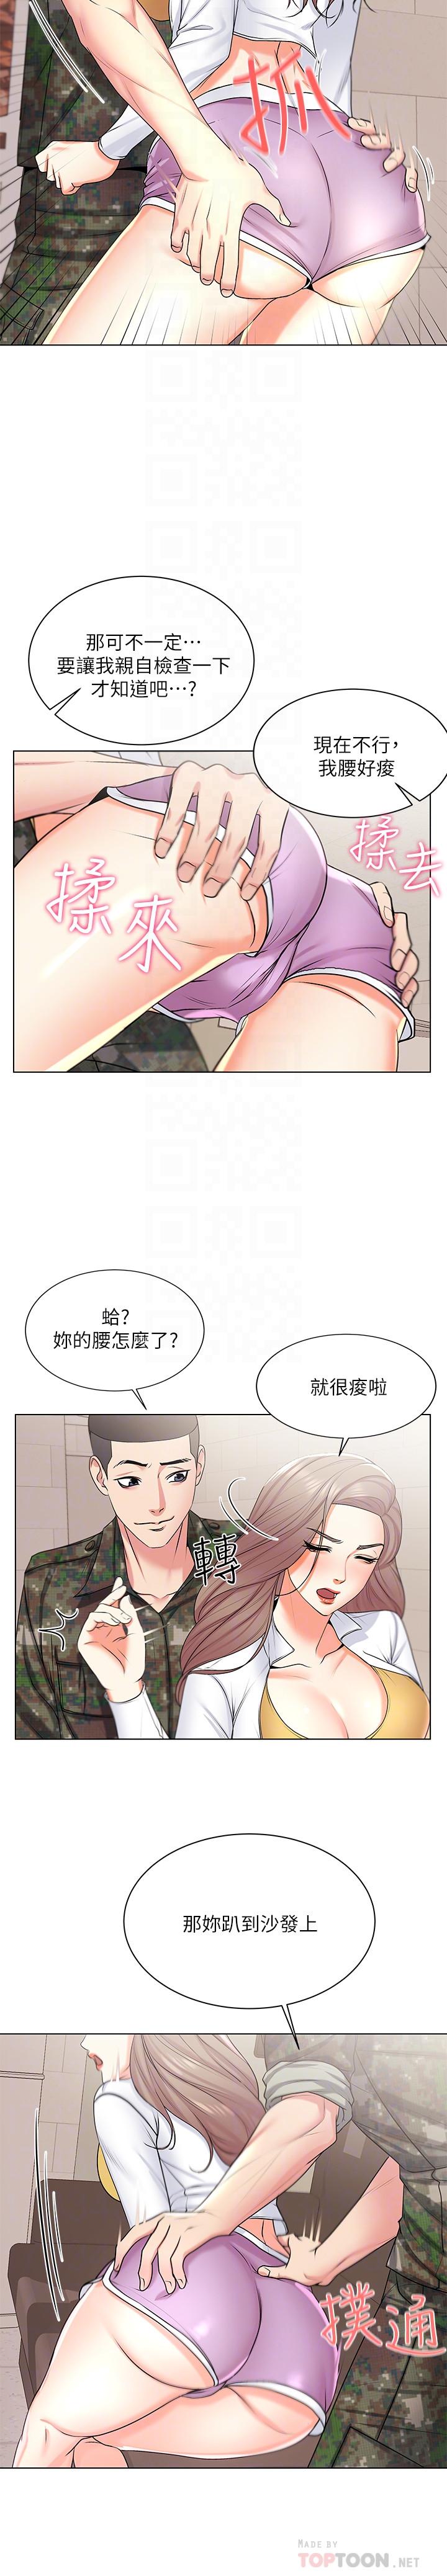 韩国污漫画 超市的漂亮姐姐 第13话-暧昧的全身按摩 14